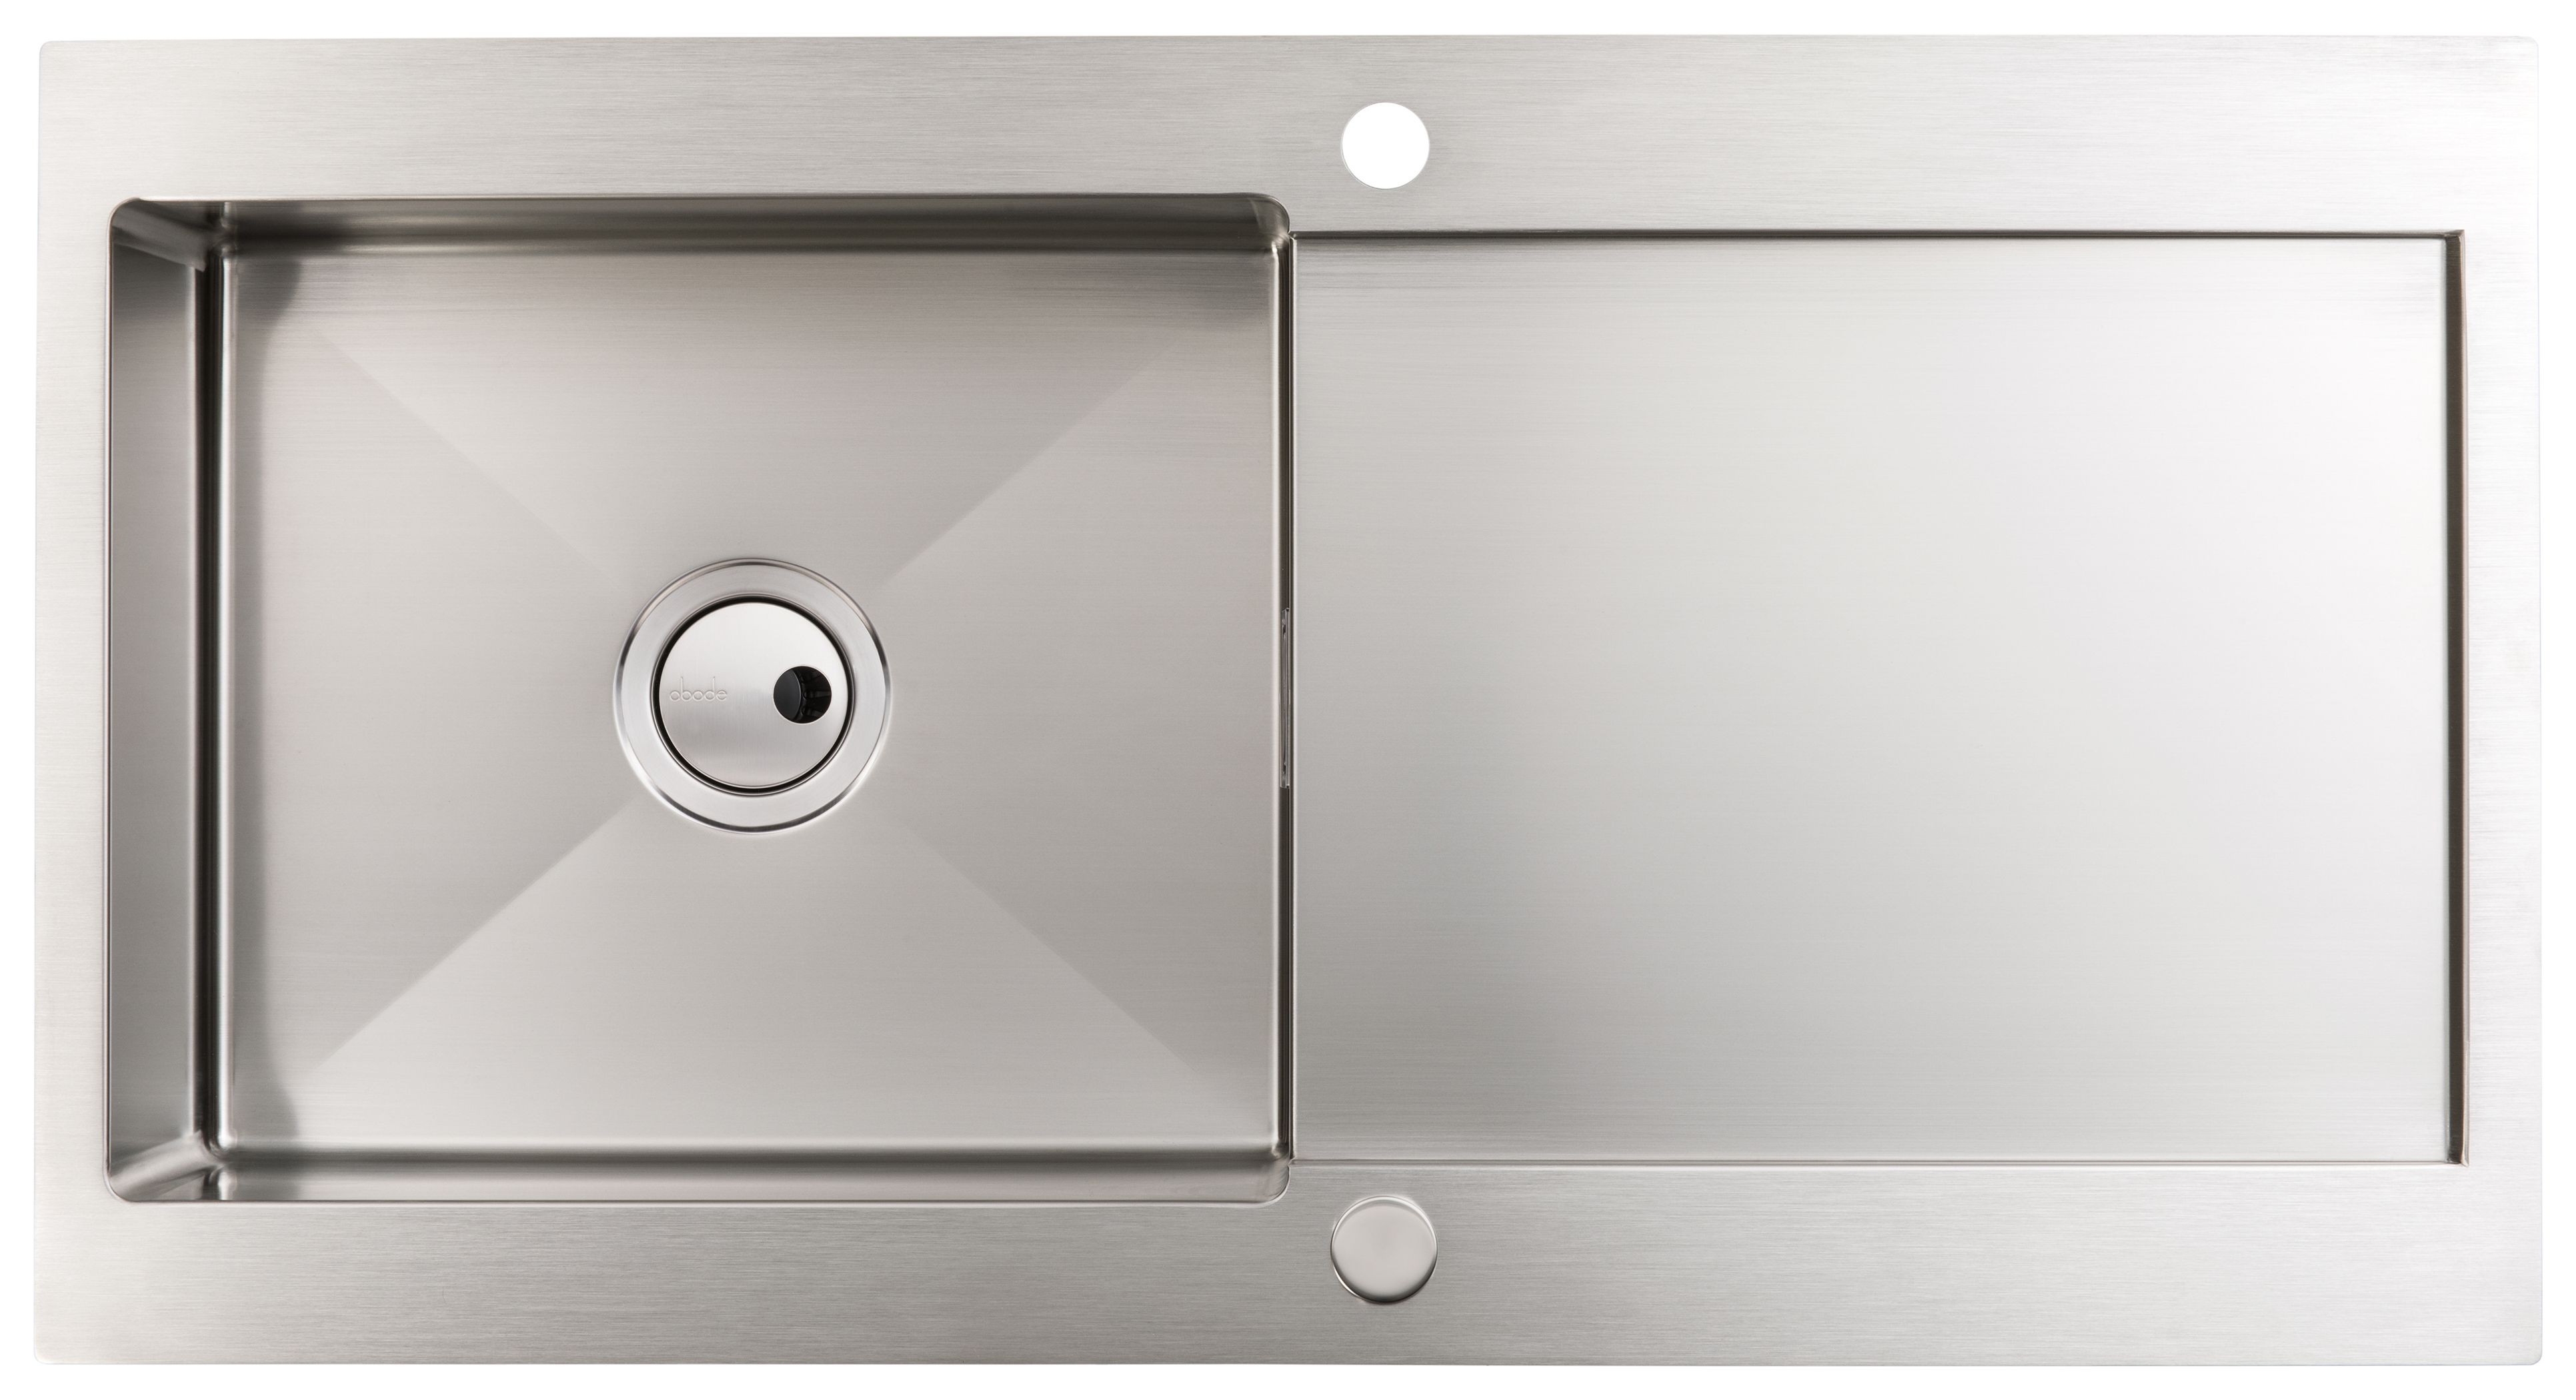 Abode Verve 1 Bowl Kitchen Sink - Stainless Steel